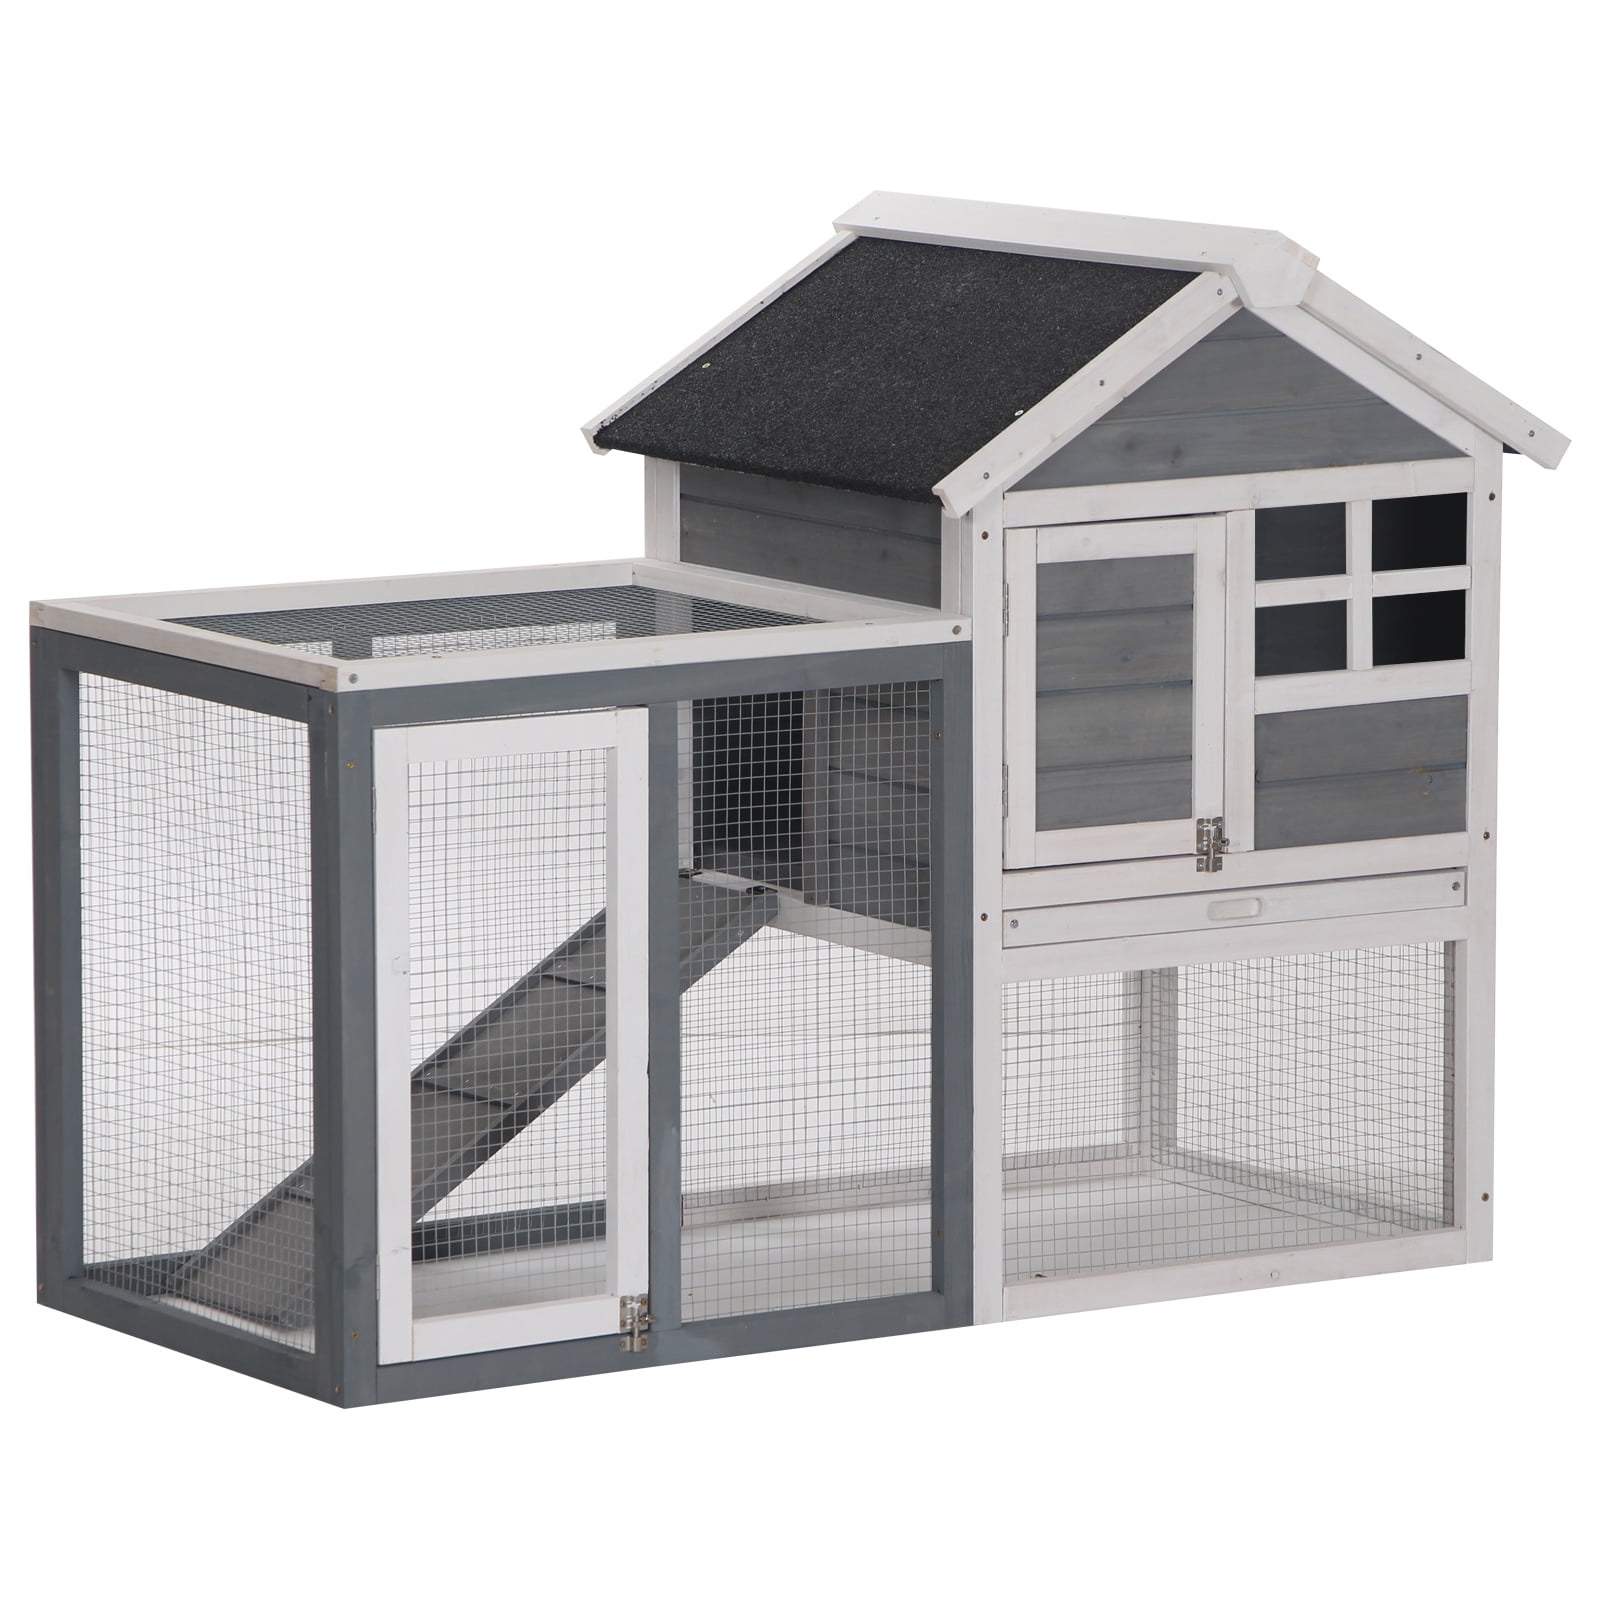 Rabbit cage Indoor BUNNY MINI-CONDO pet pen NO WIRE FOORS home hutch 